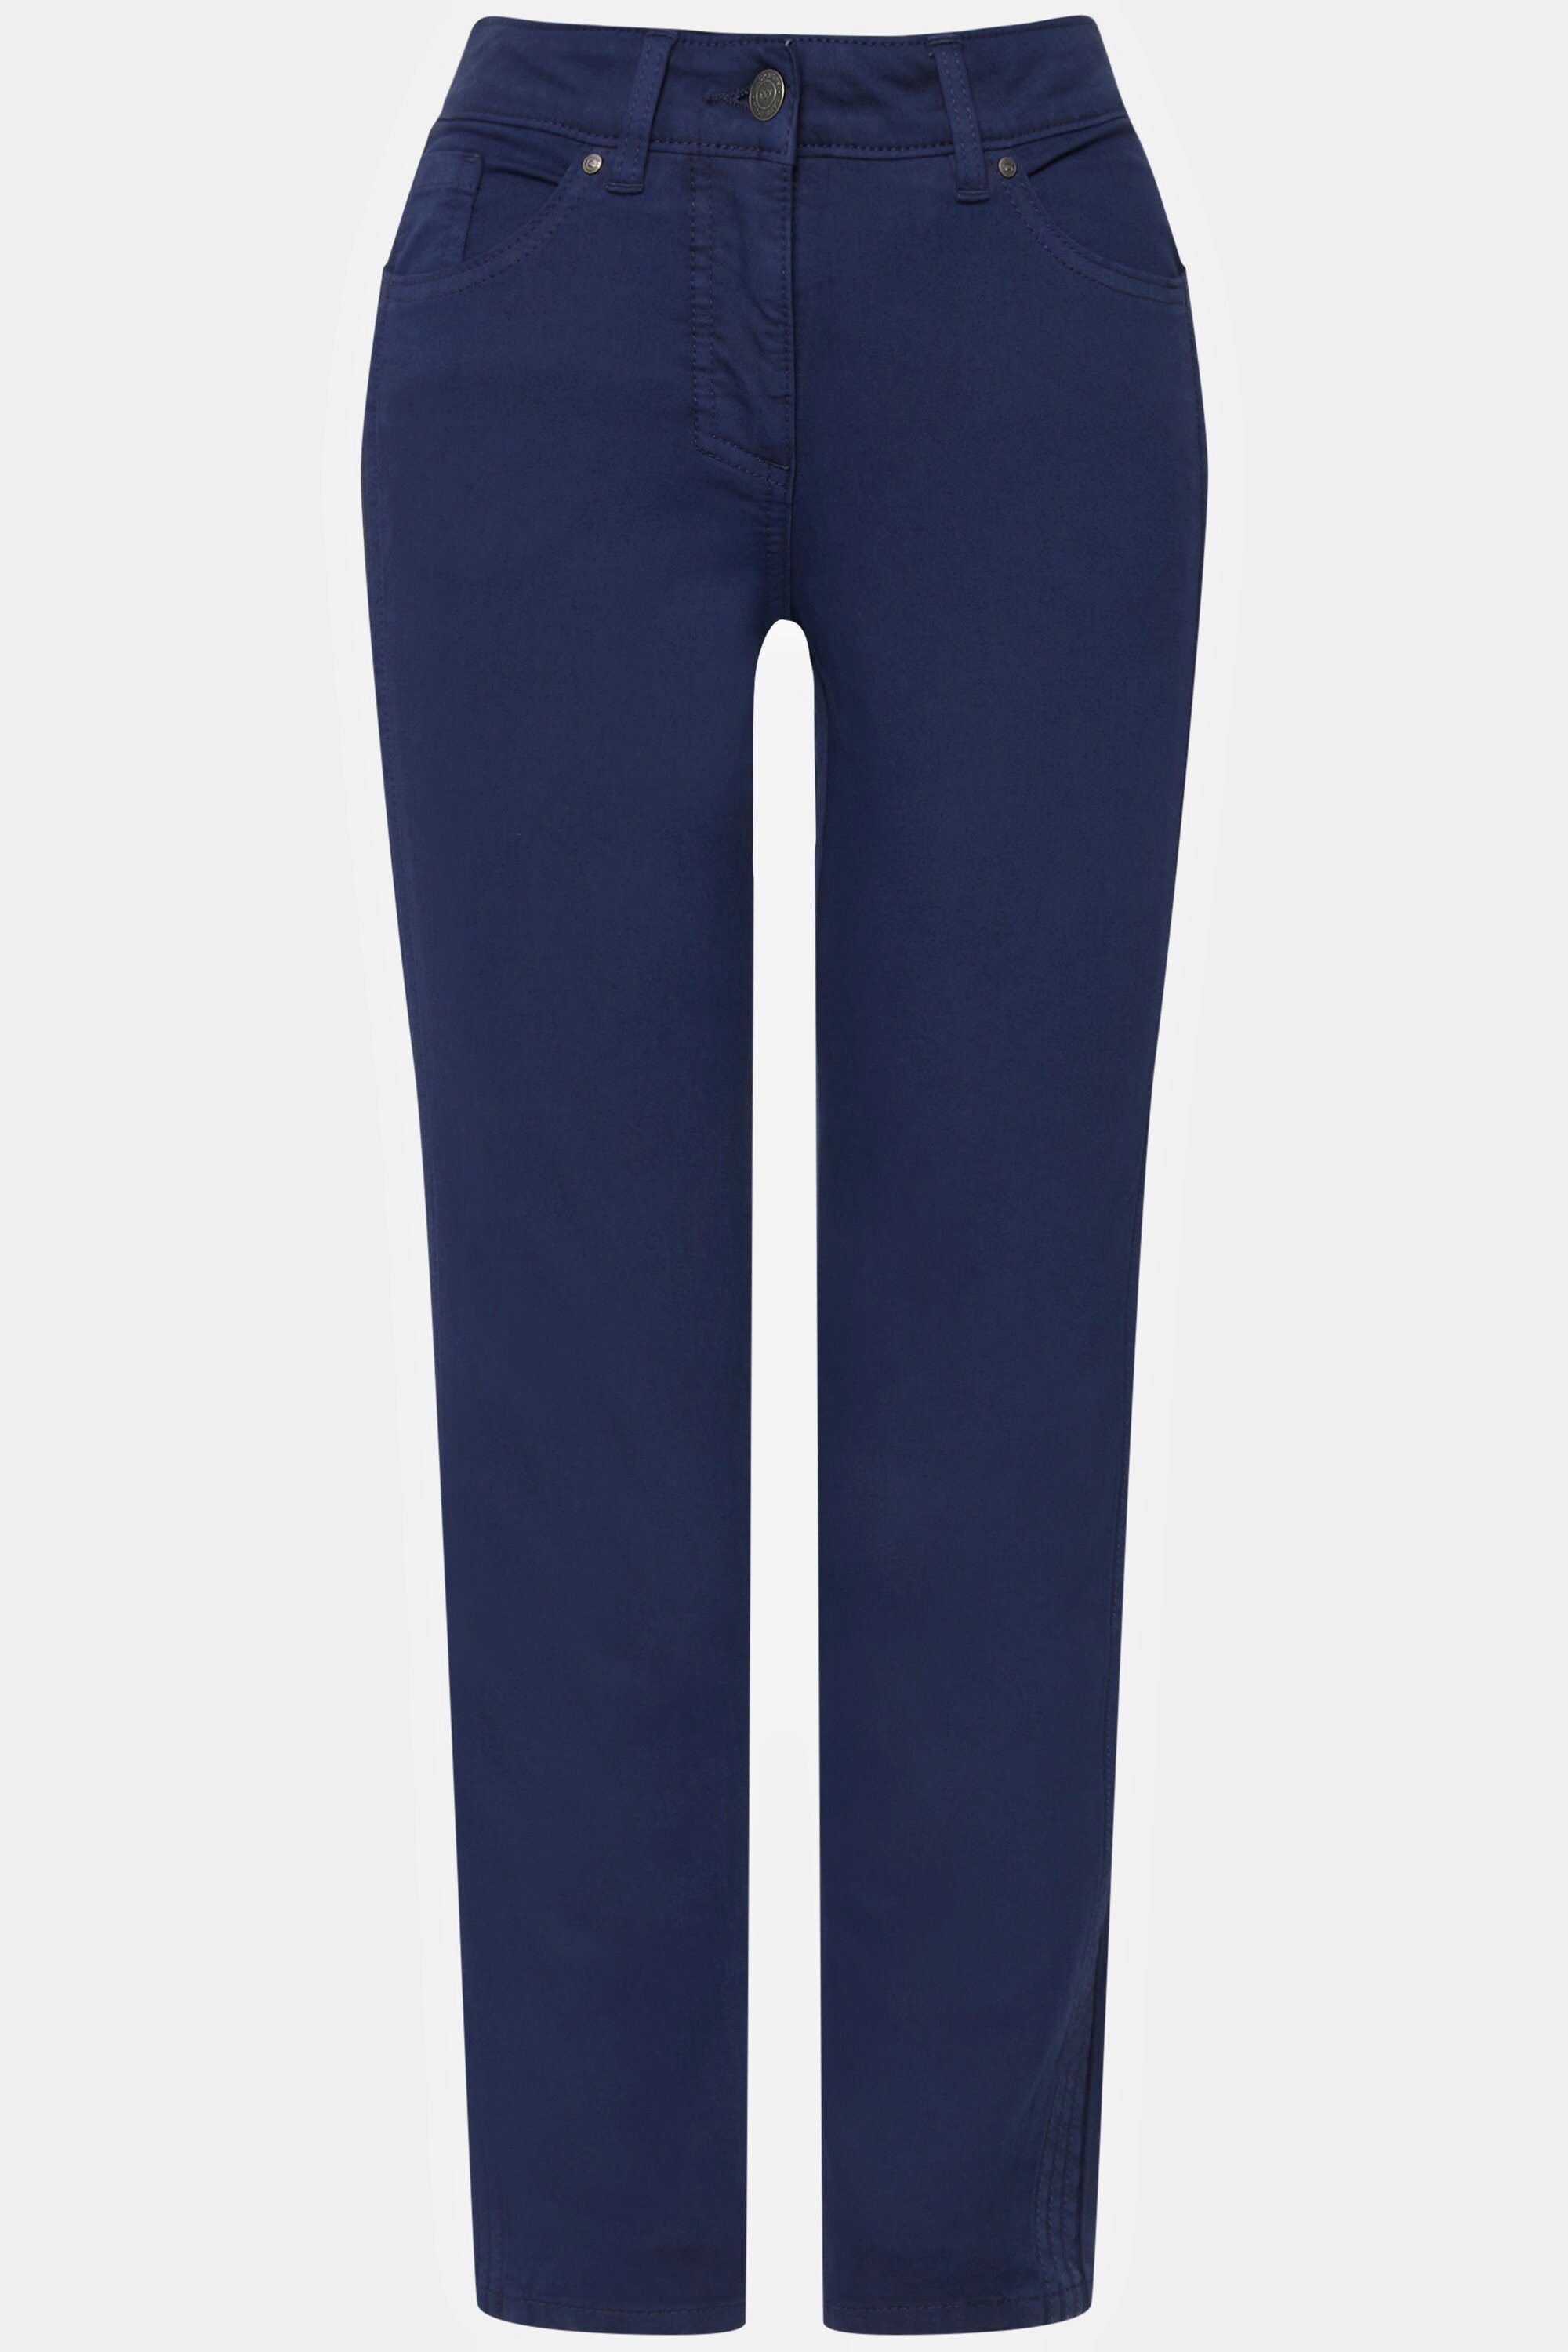 Tina Laurasøn Jeans 5-Pocket-Jeans seitliche jeansblau gerade Zierfalten Passform